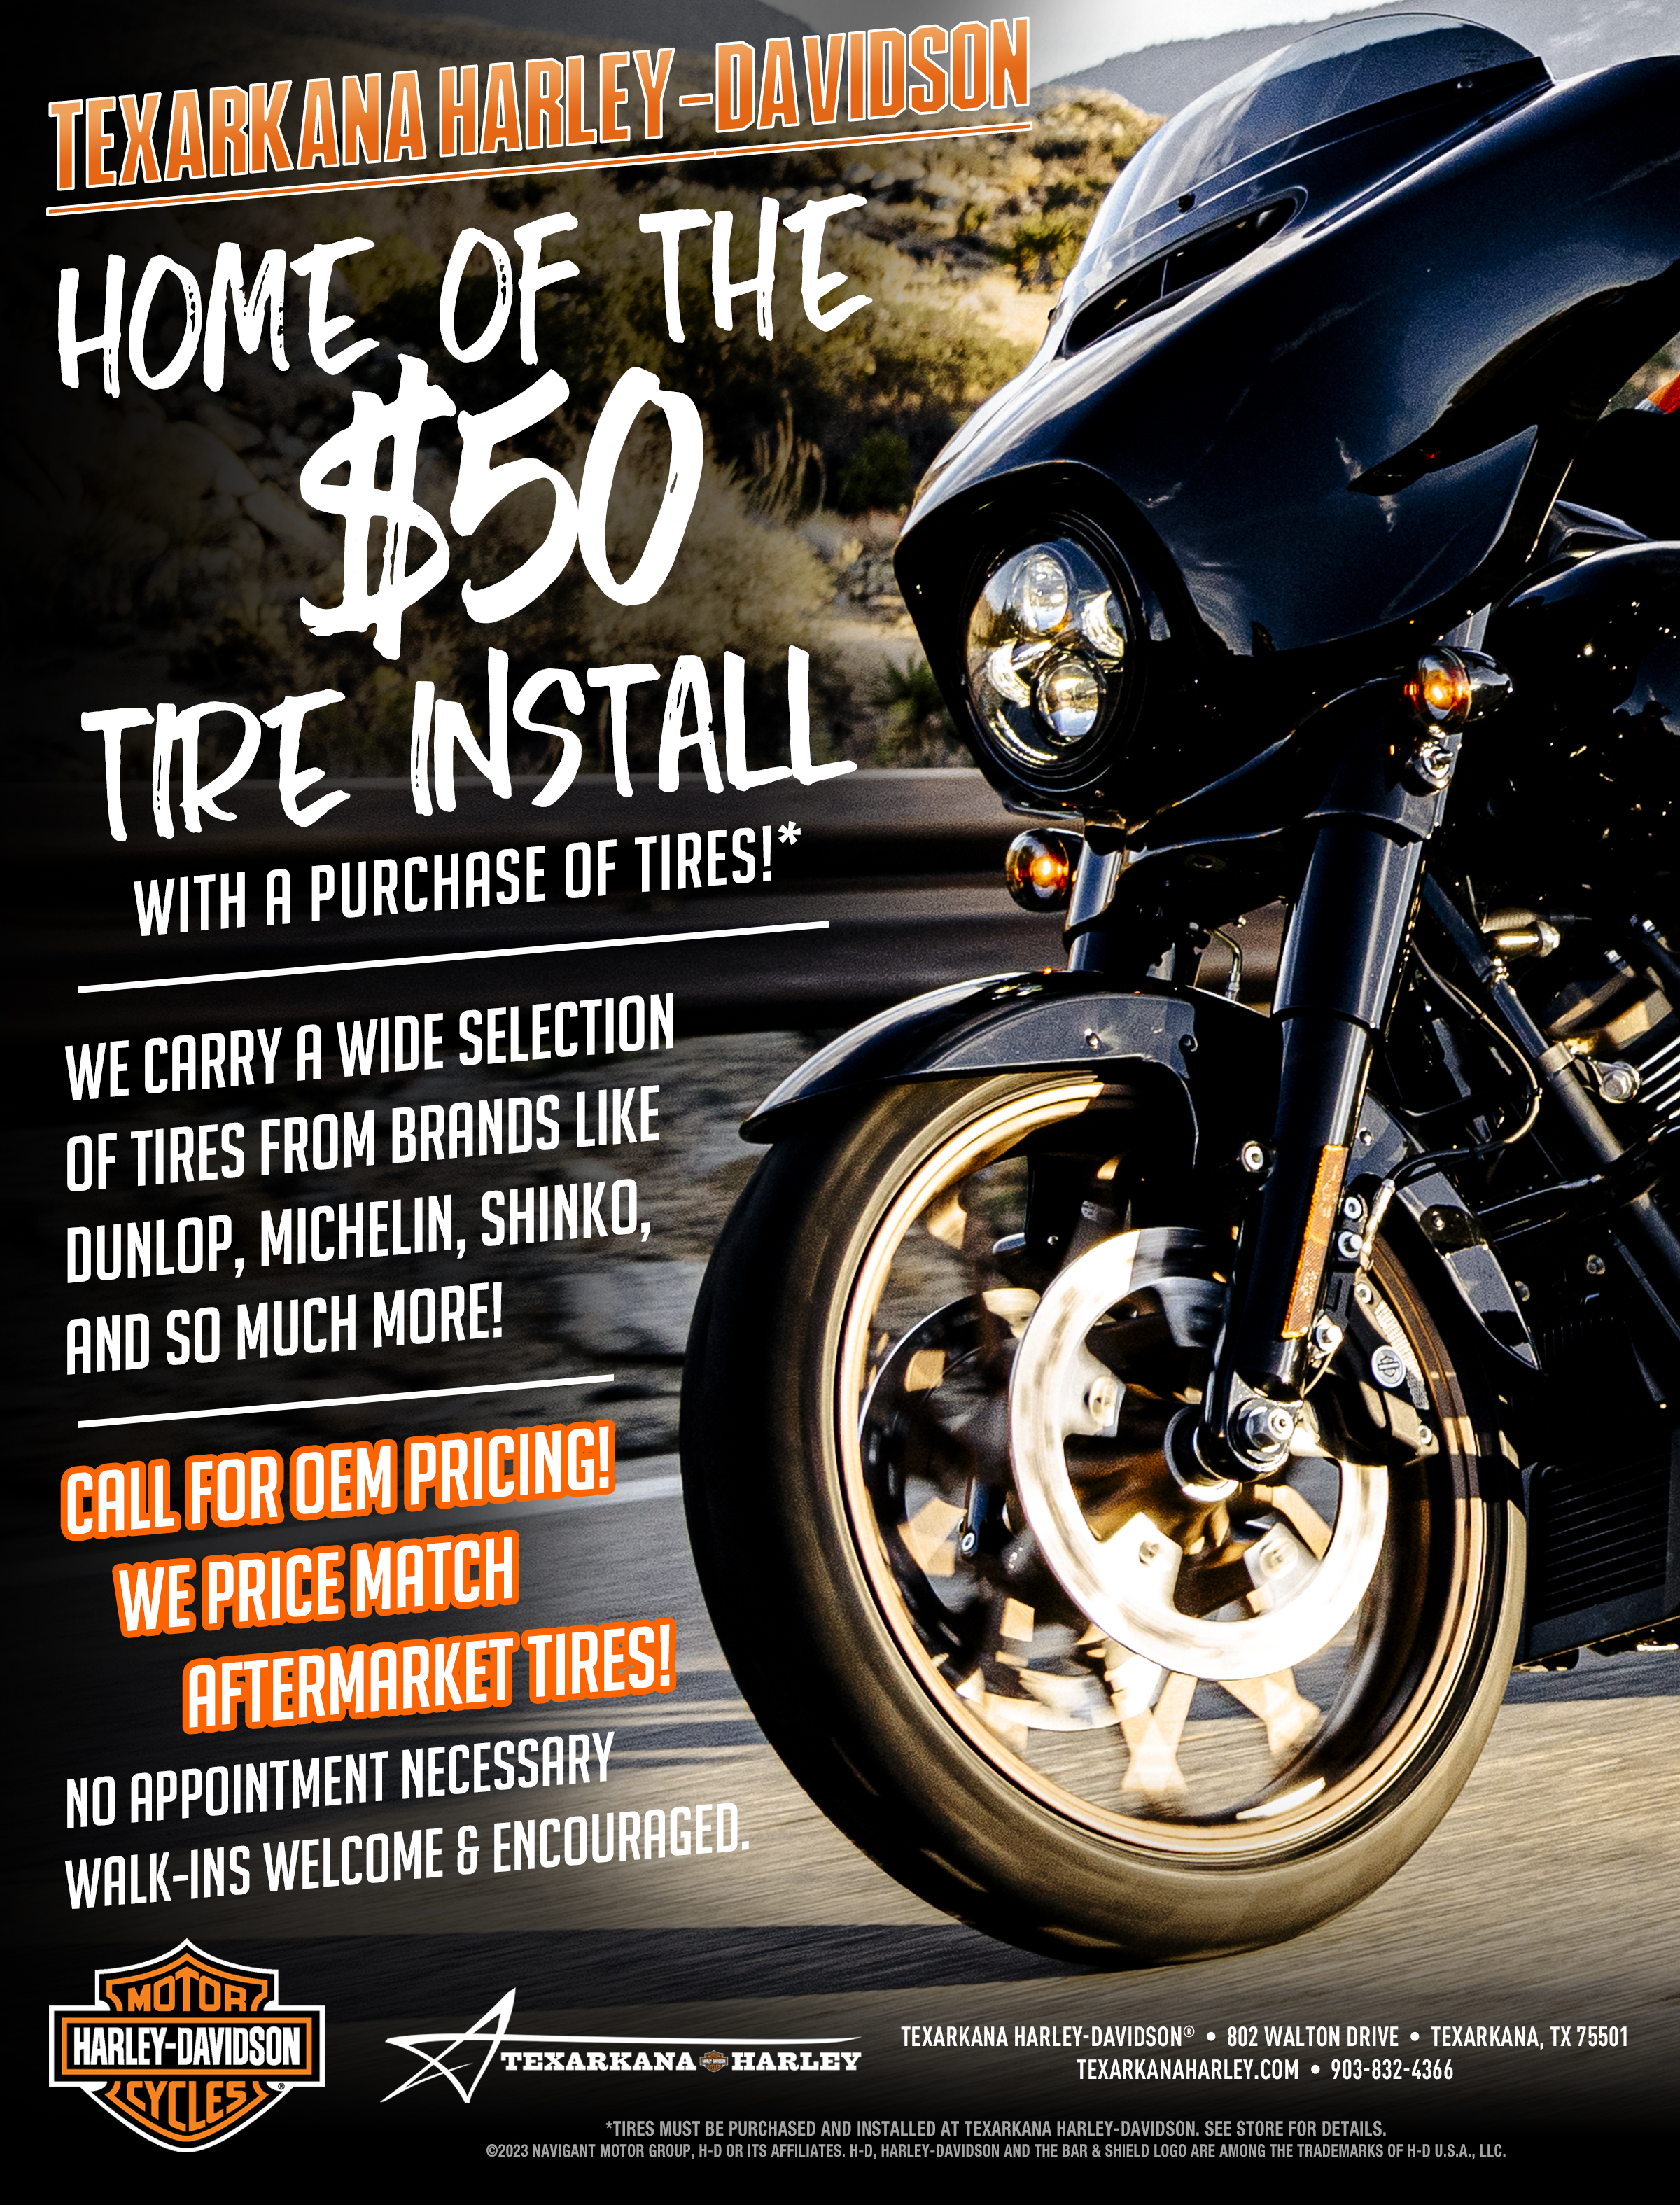 Texarkana Harley-Davidson $50 Tire Install